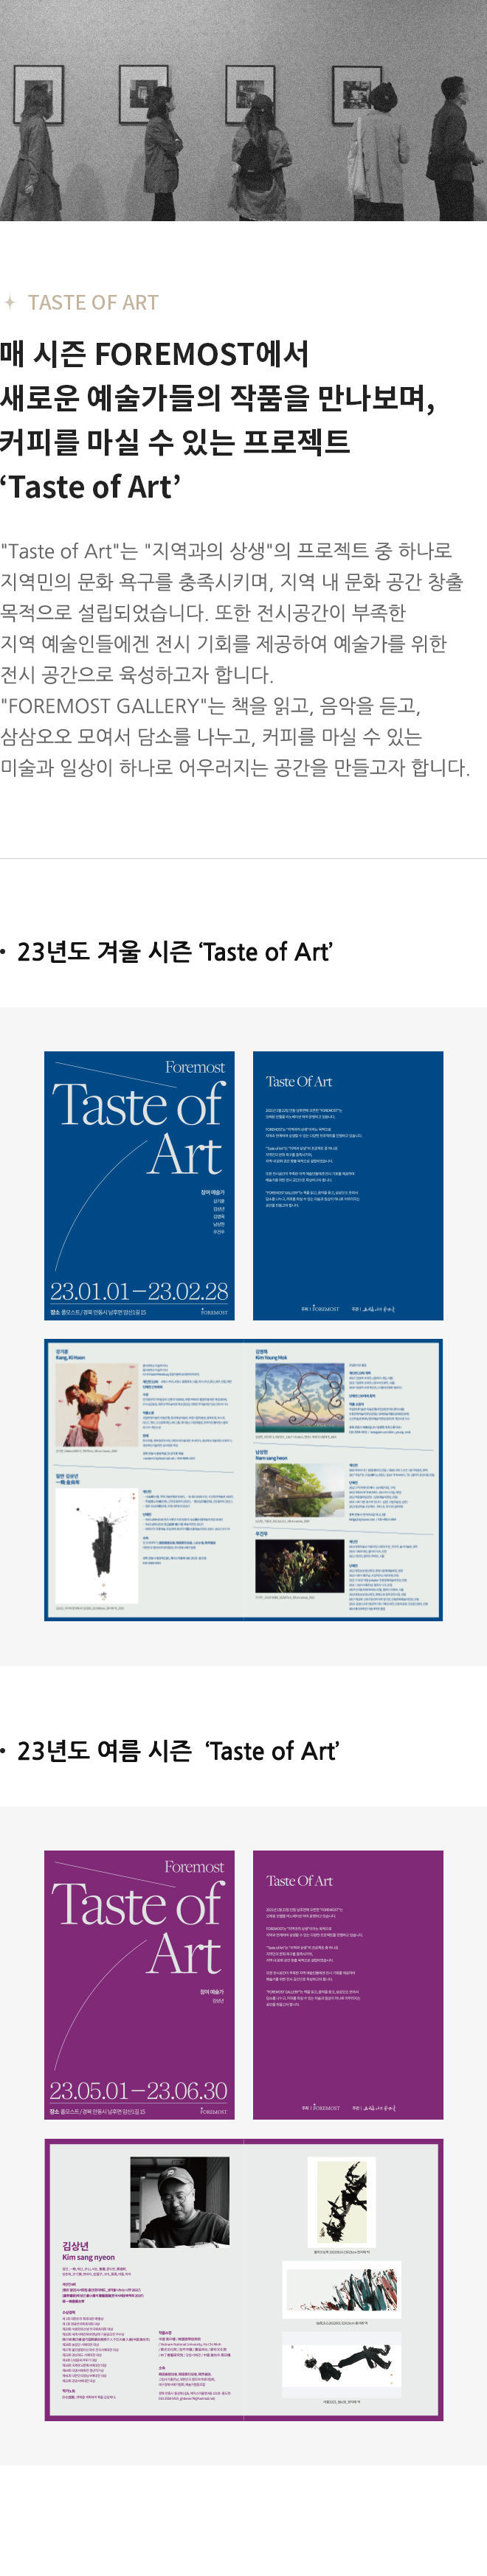 매 시즌 FOREMOST에서 새로운 예술가들의 작품을 만나보며, 커피를 마실 수 있는 프로젝트 ‘Taste of Art’